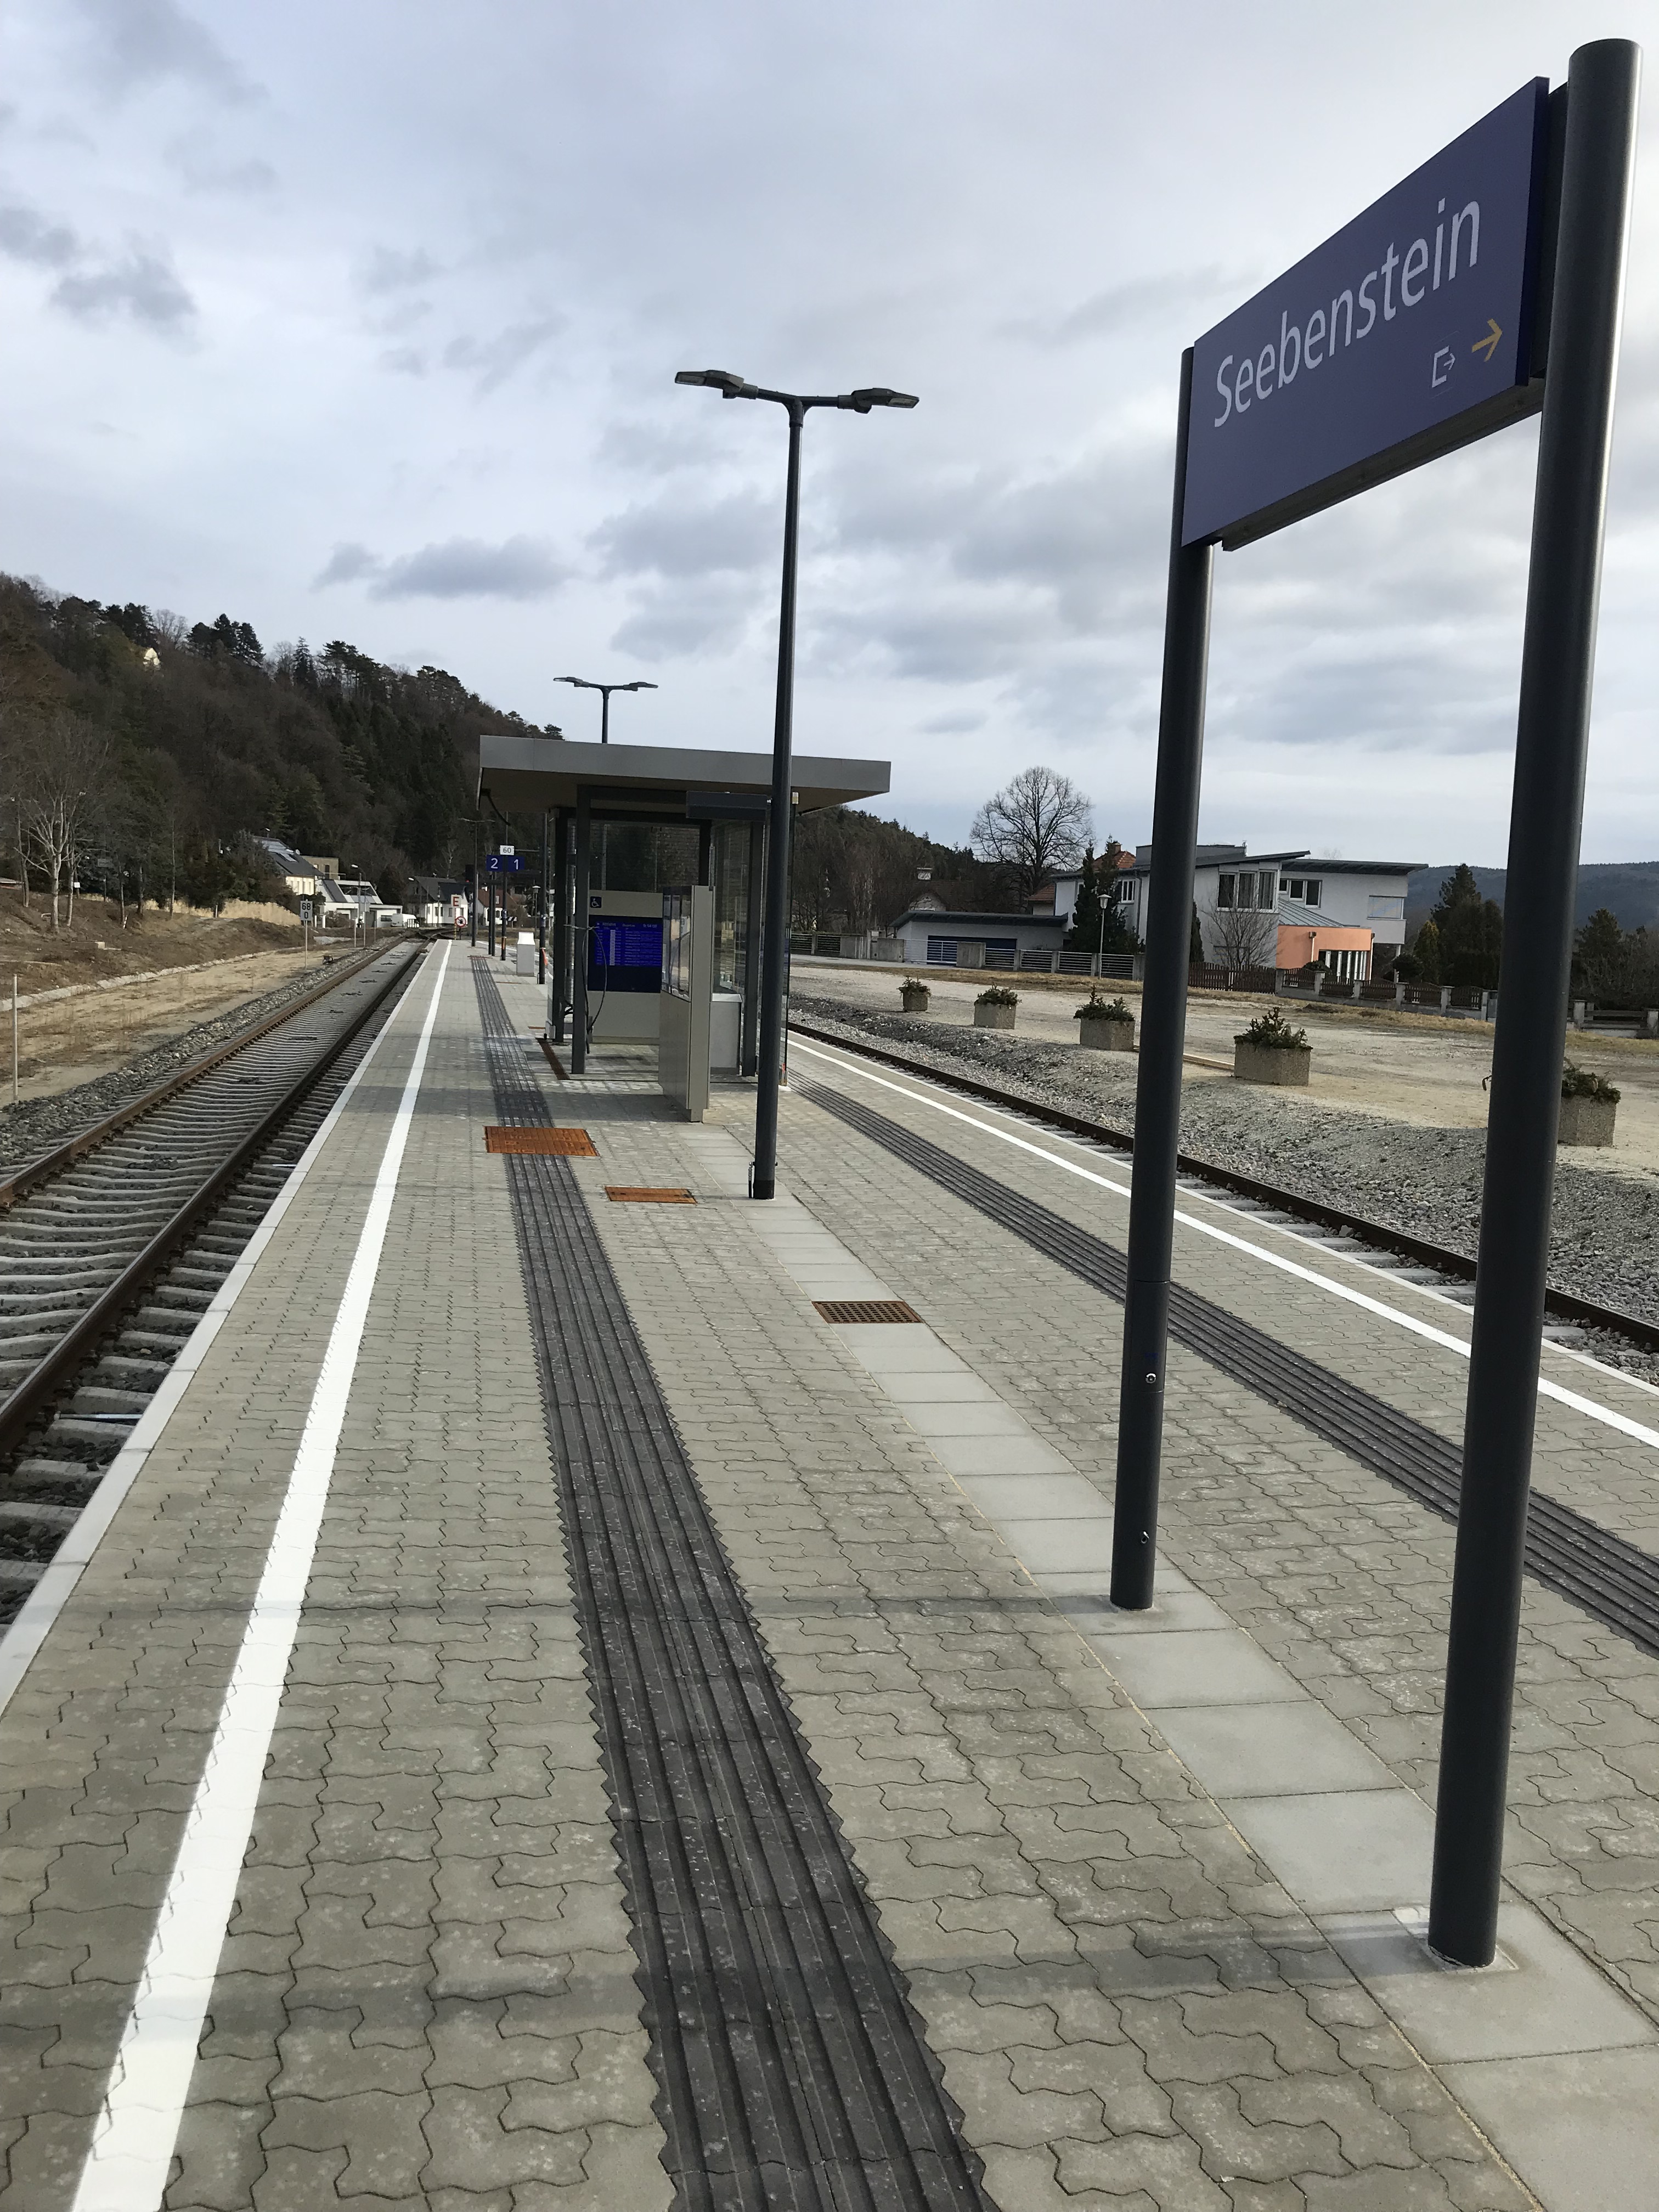 Umbau Bahnhof Seebenstein - Mélyépítés